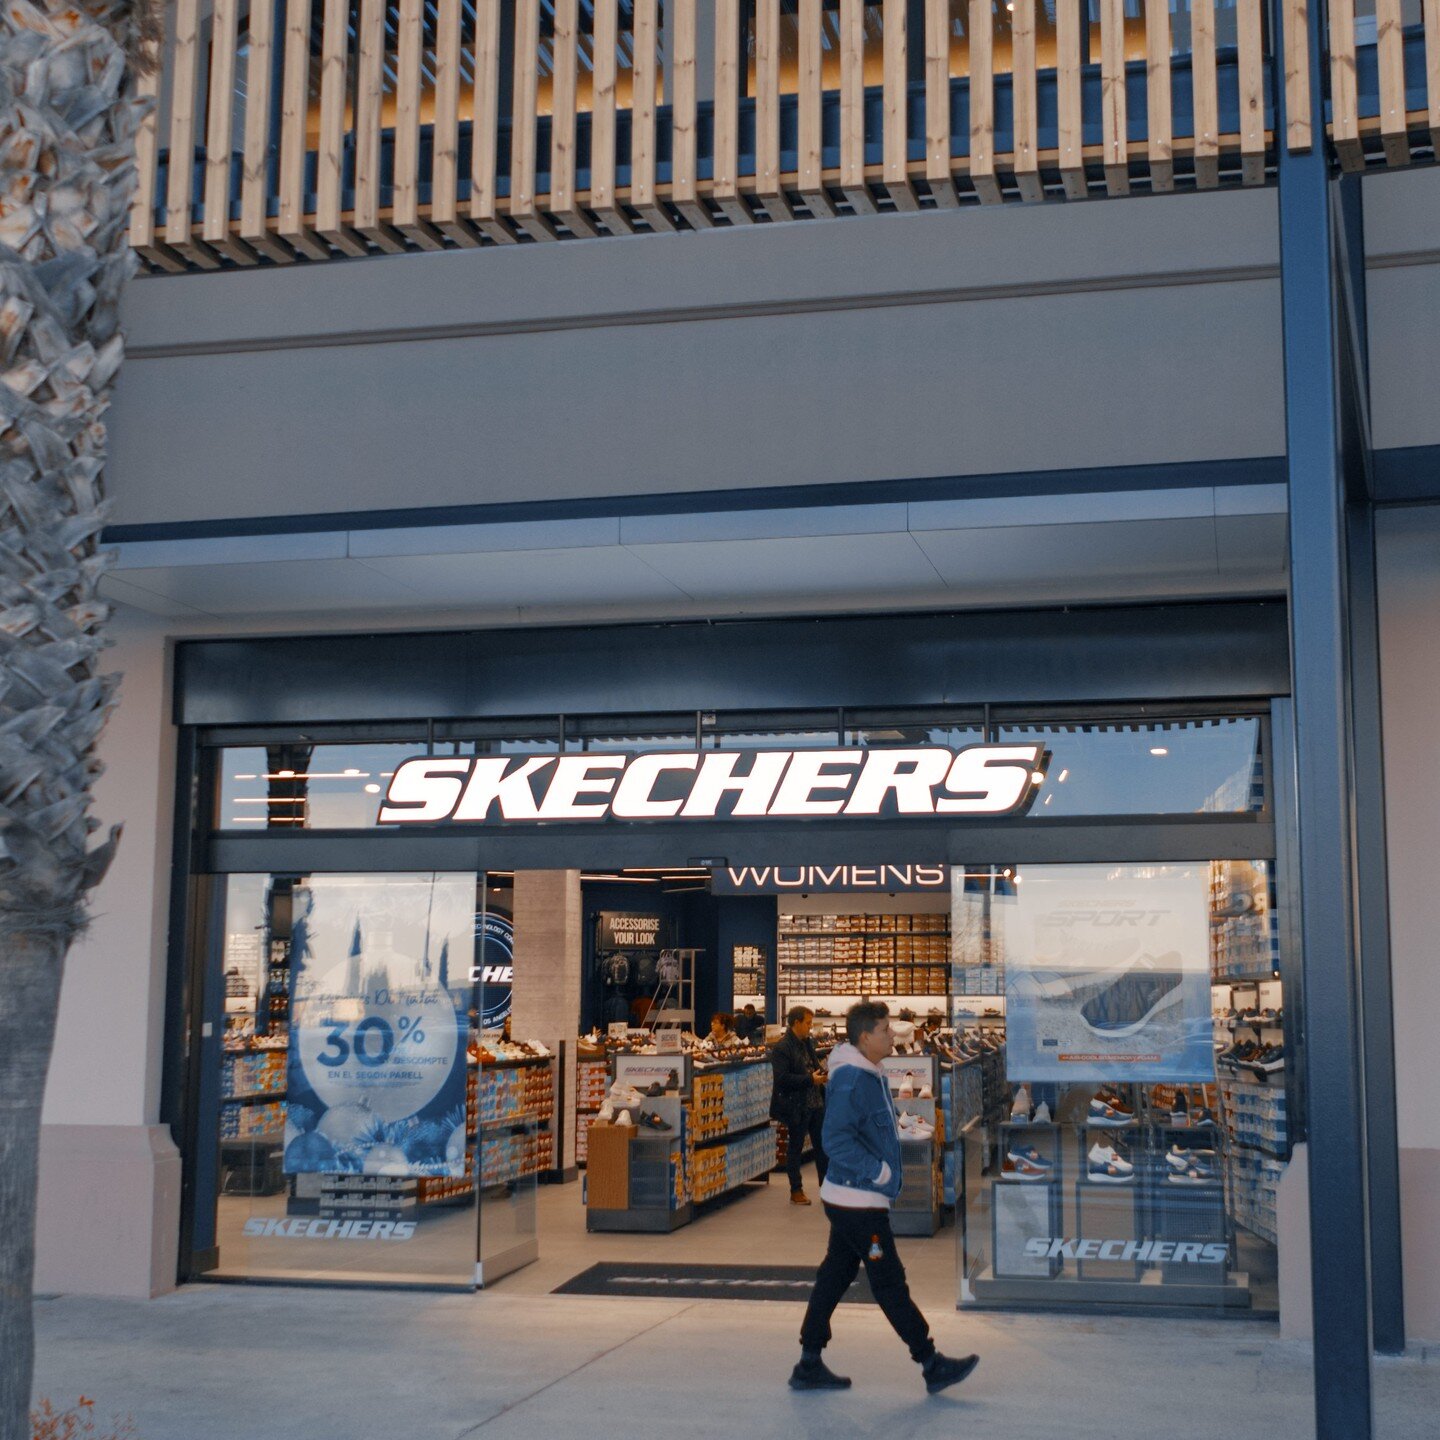 Estamos muy contentos con otro proyecto terminado de la marca #skechers , esta vez en en el centro comercial Parc Valles de Terrassa, Barcelona.